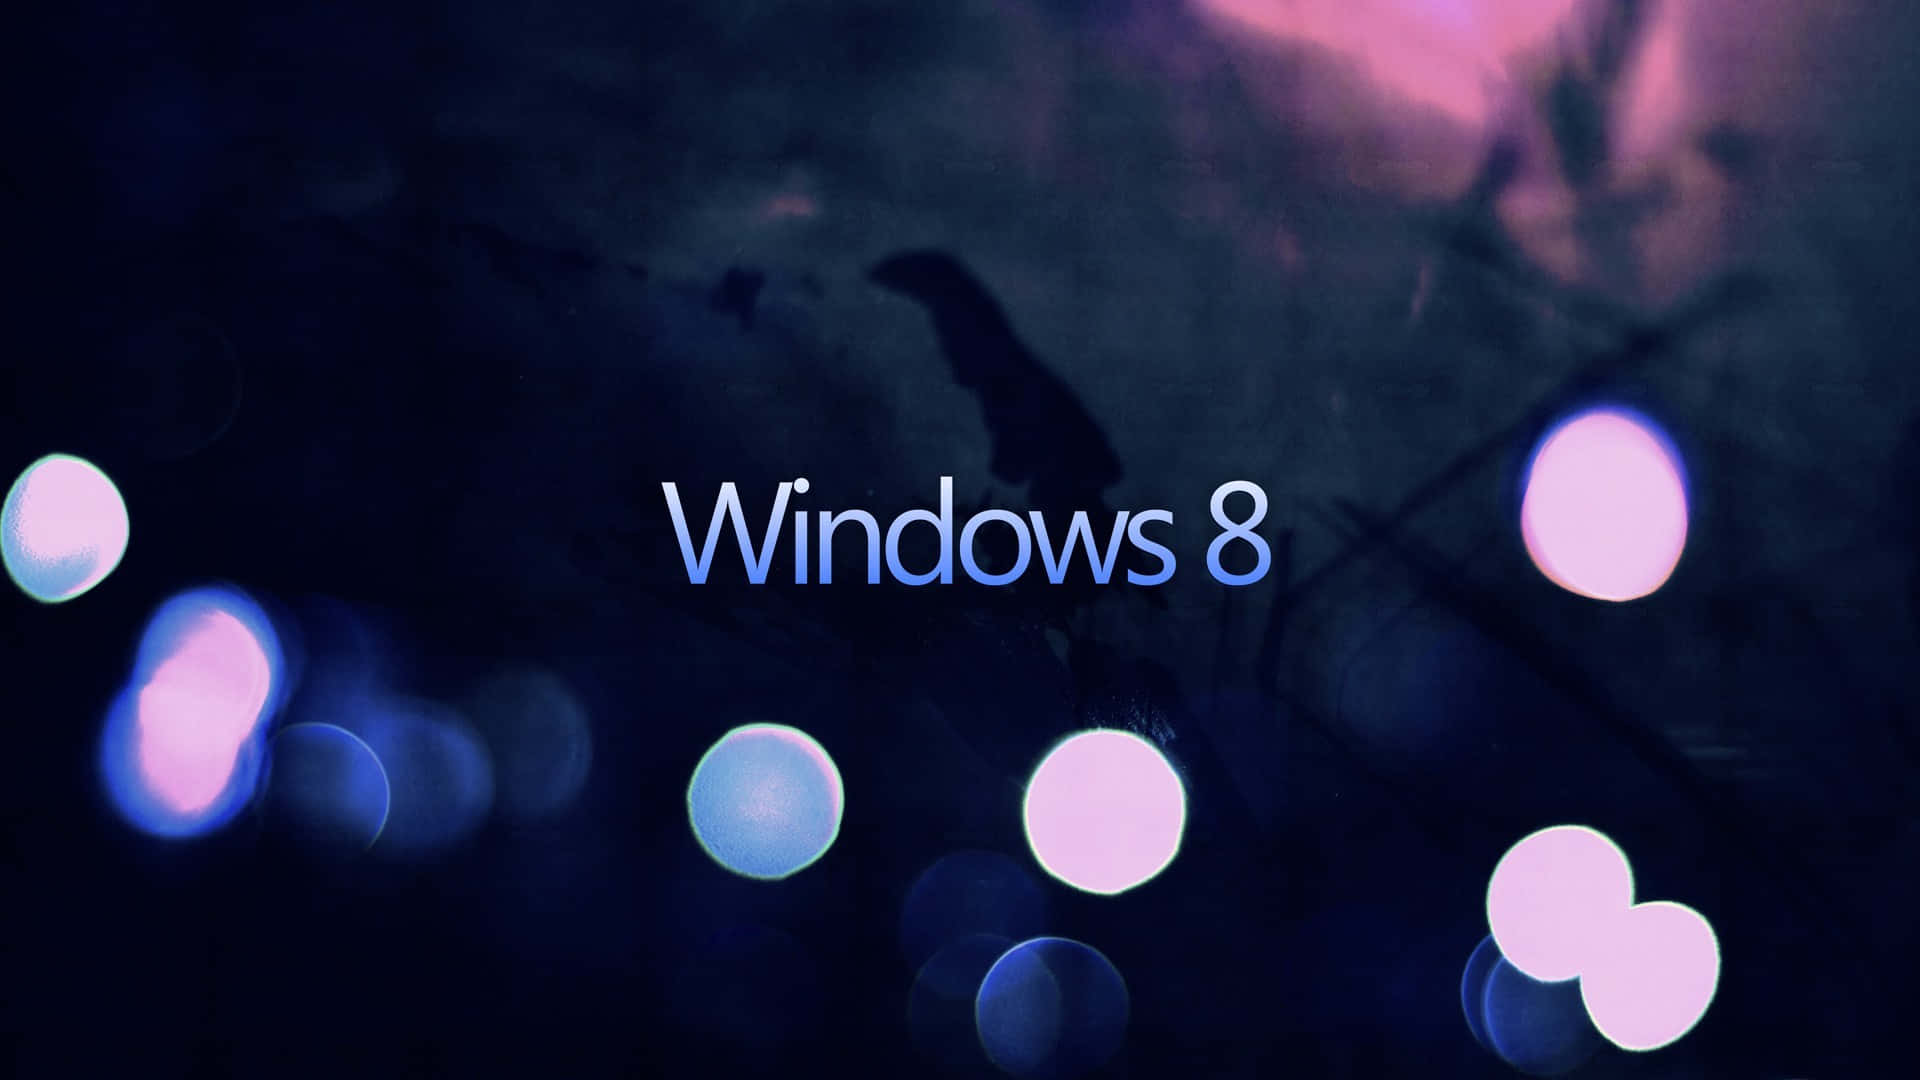 Sfondoastratto Per Windows 8